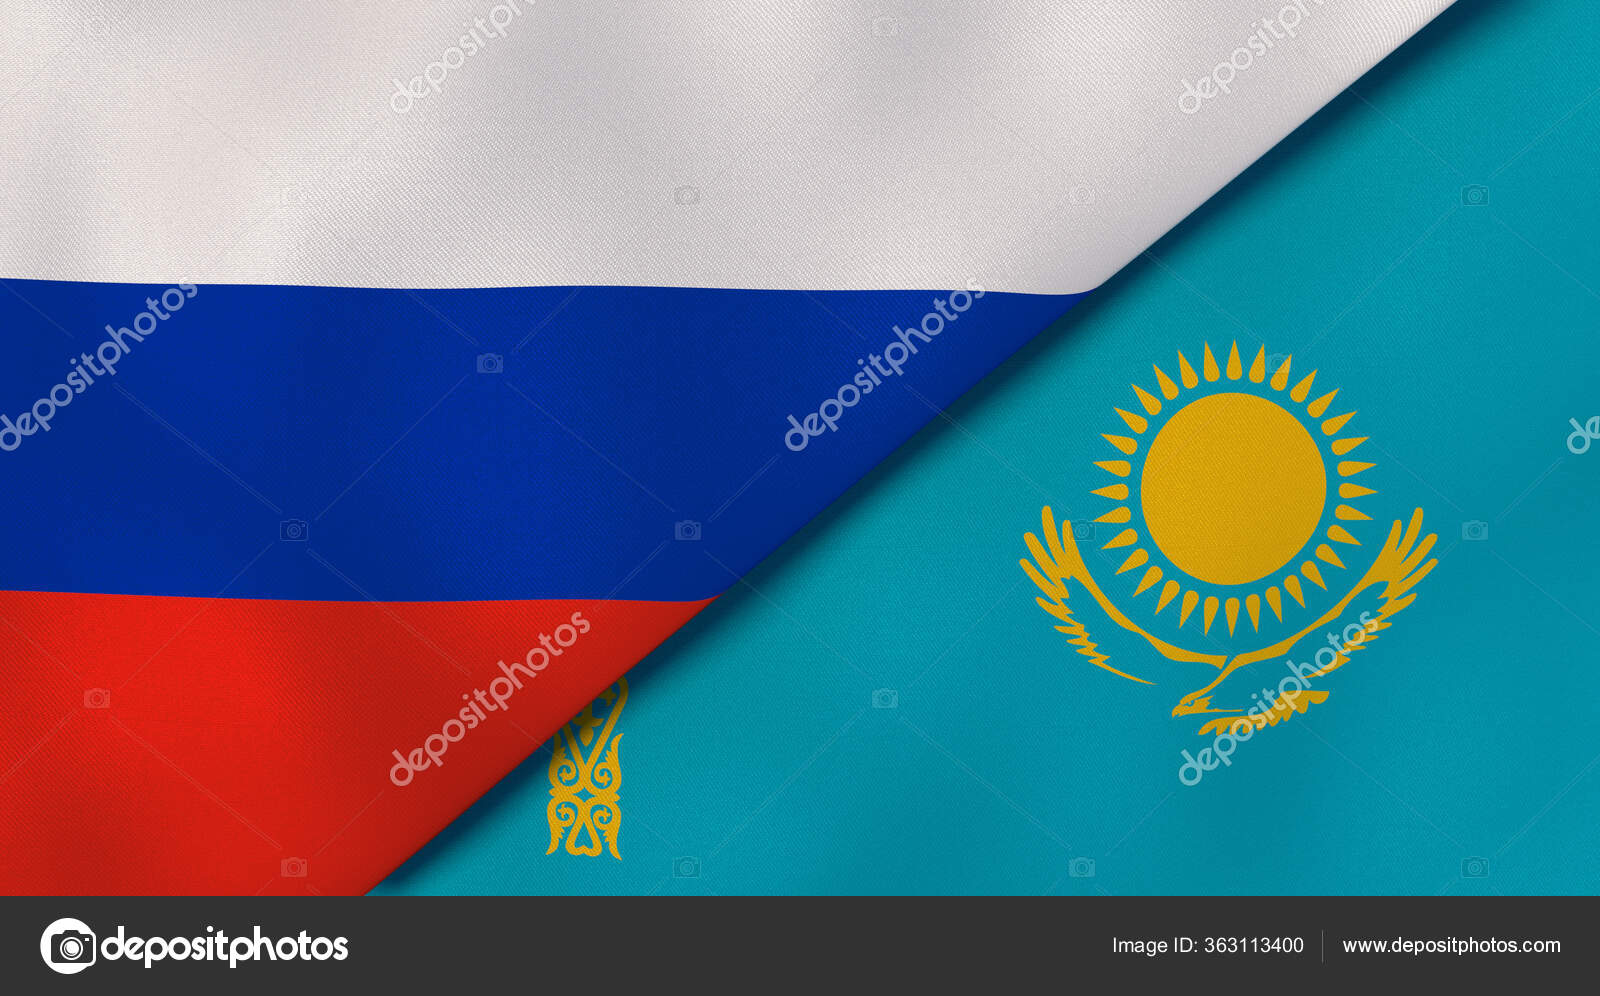 Russland-Flagge ilustración de Stock